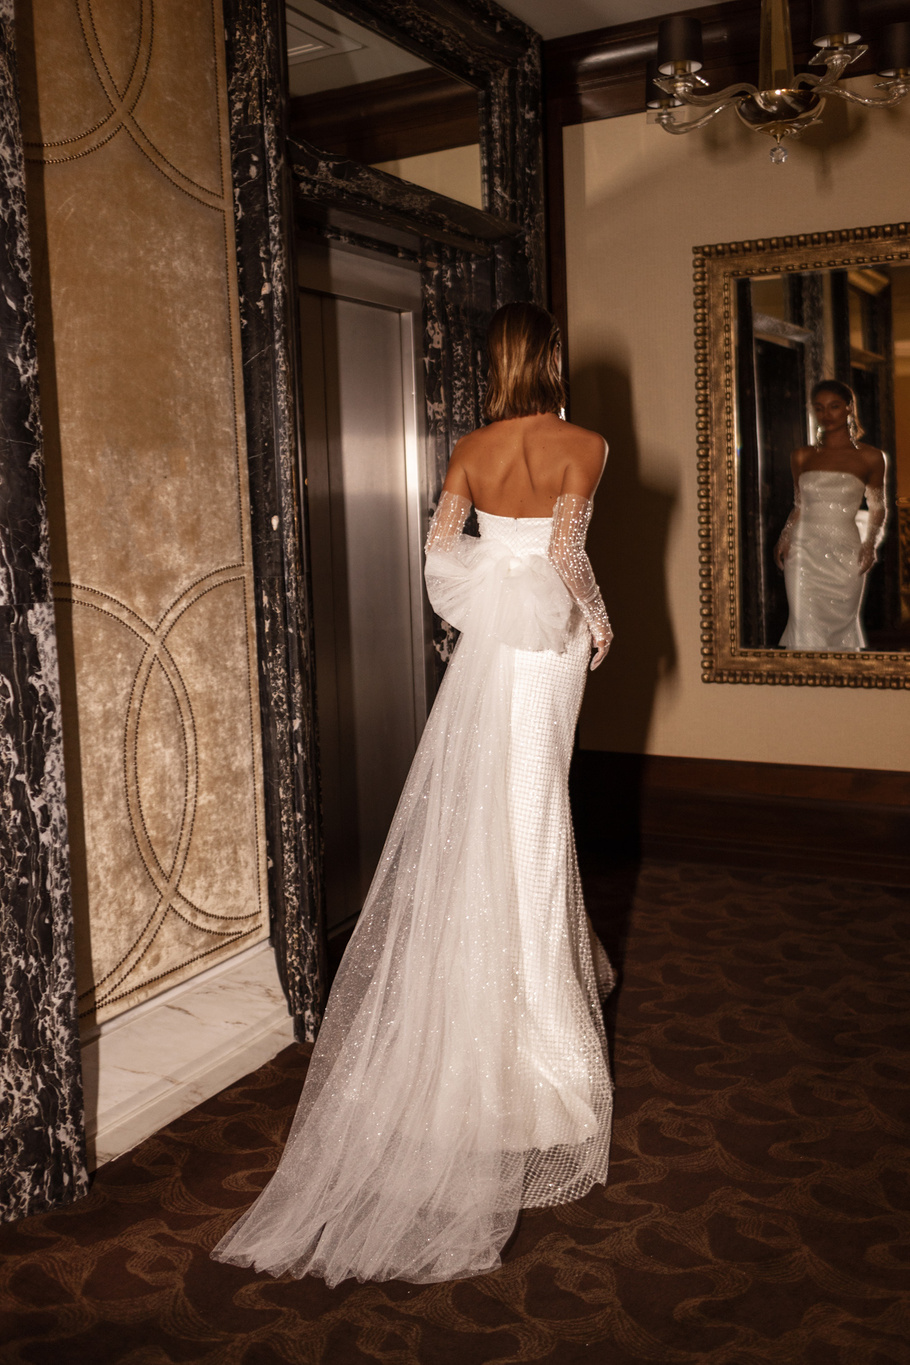 Купить свадебное платье «Чалеур» Анна Кузнецова из коллекции Муза 2022 года в салоне «Мэри Трюфель»